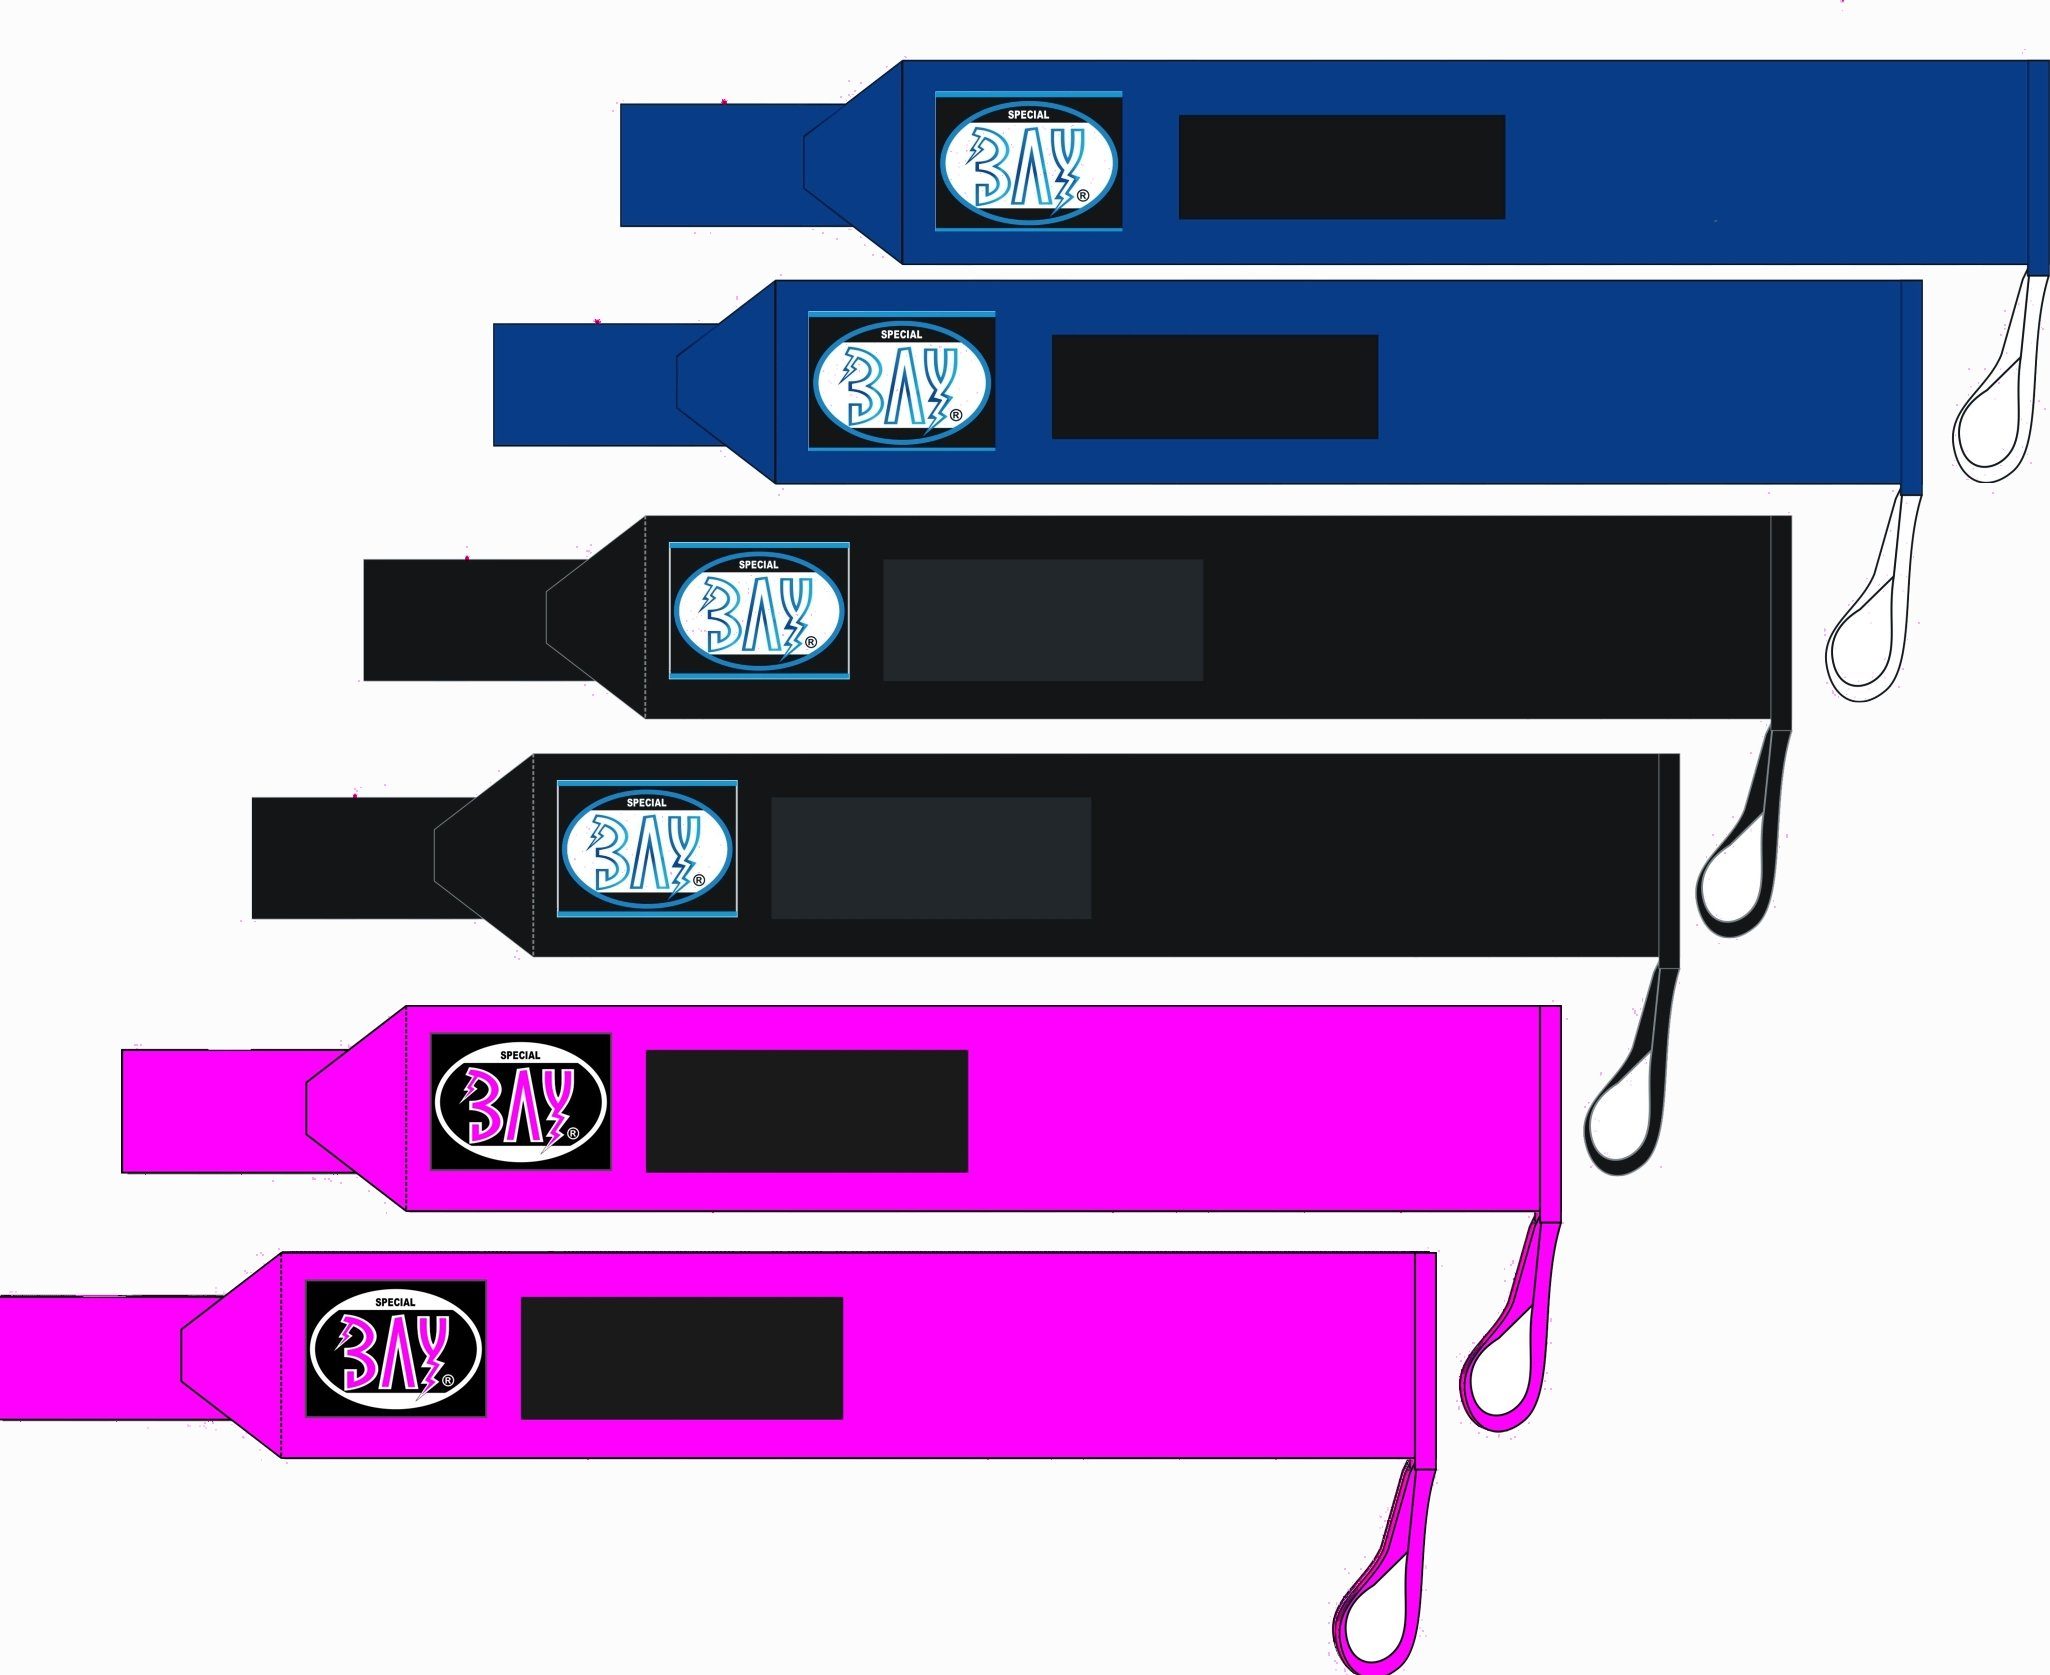 Farben besonders zum BAY-Sports Wickeln Ellbogenbandagen 3 fixierbar, Ellenbogenschutz Kraftsport, Klettverschluss, pink extrem fest